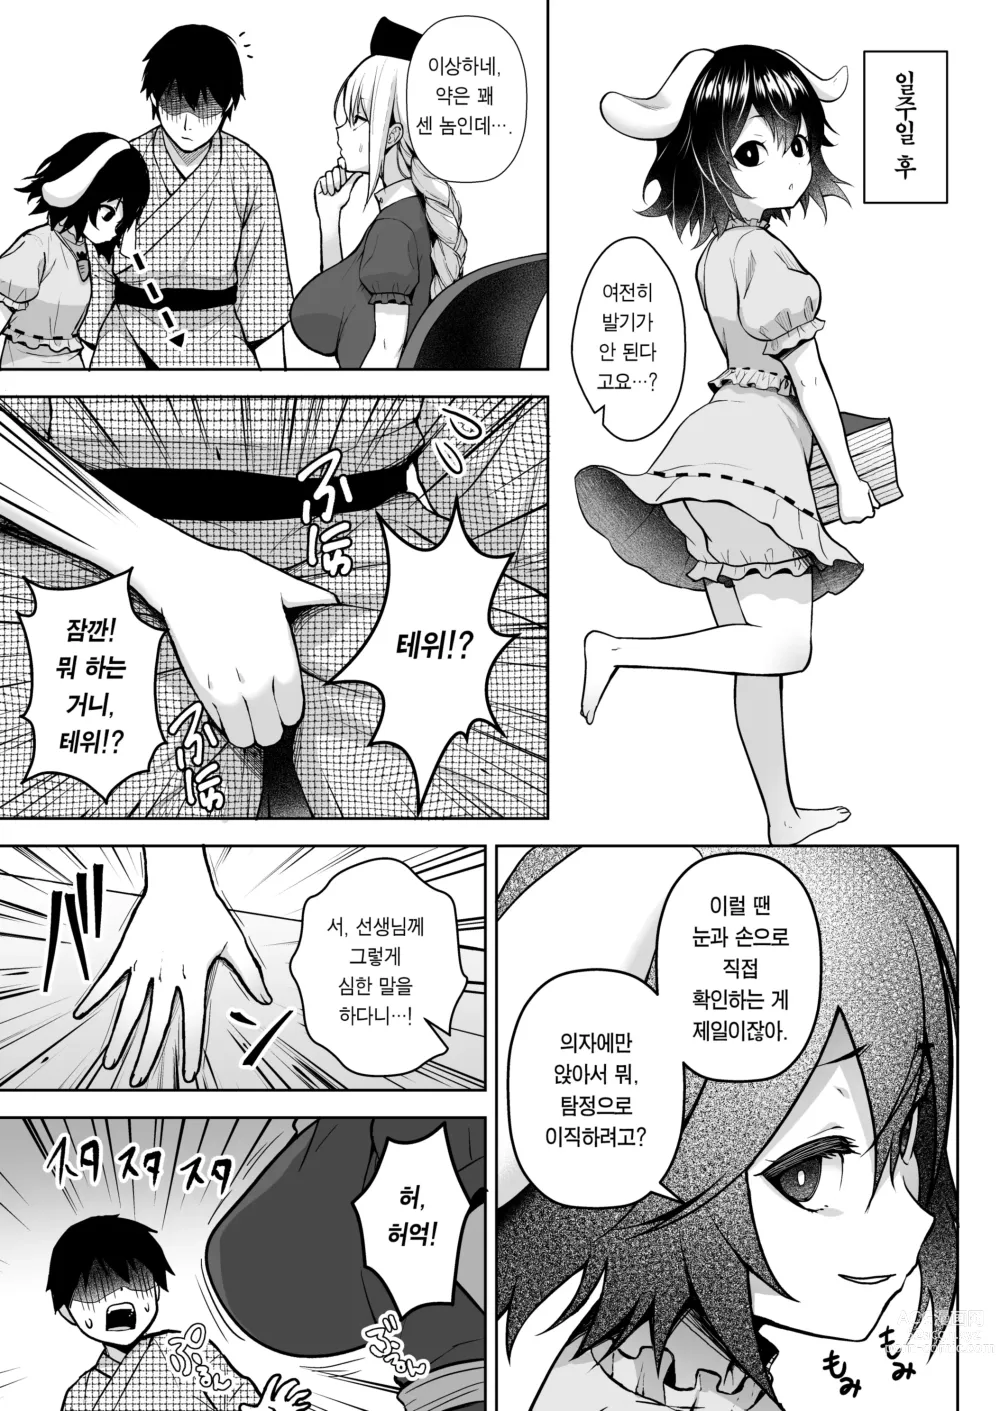 Page 5 of doujinshi 에이린이 가슴을 존나 괴롭혀져서 P컵이 되기까지의 이야기